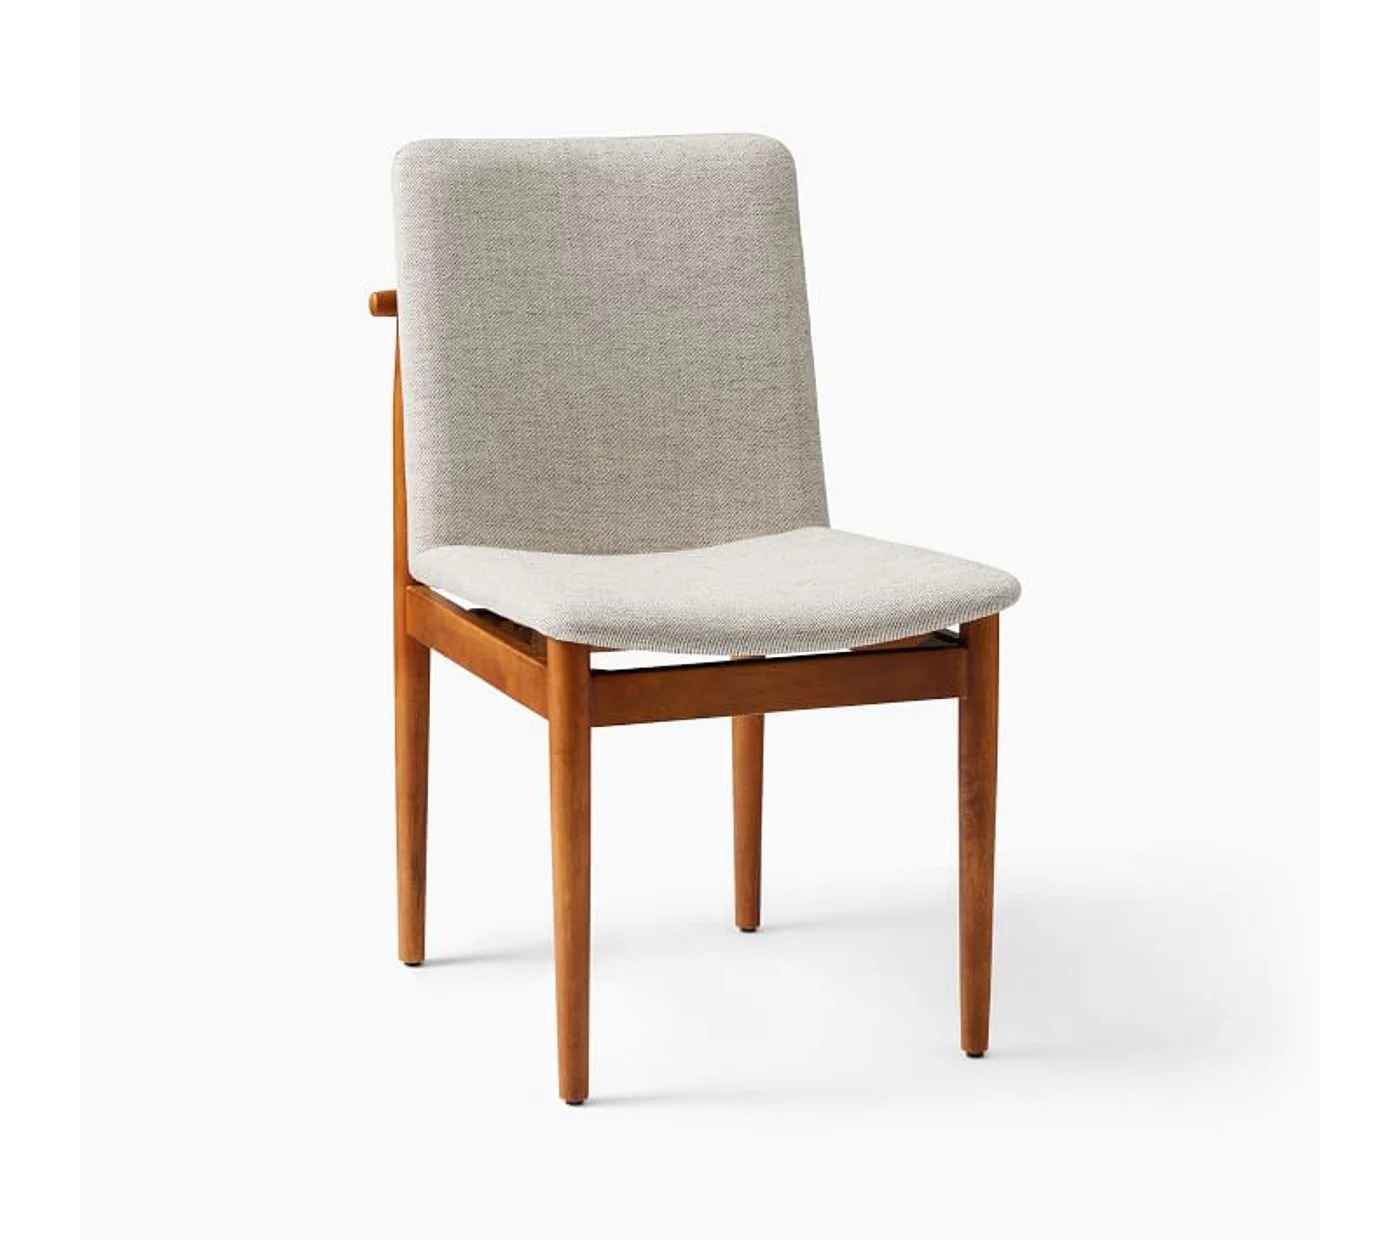 Framwork Upholstered Dining Chair